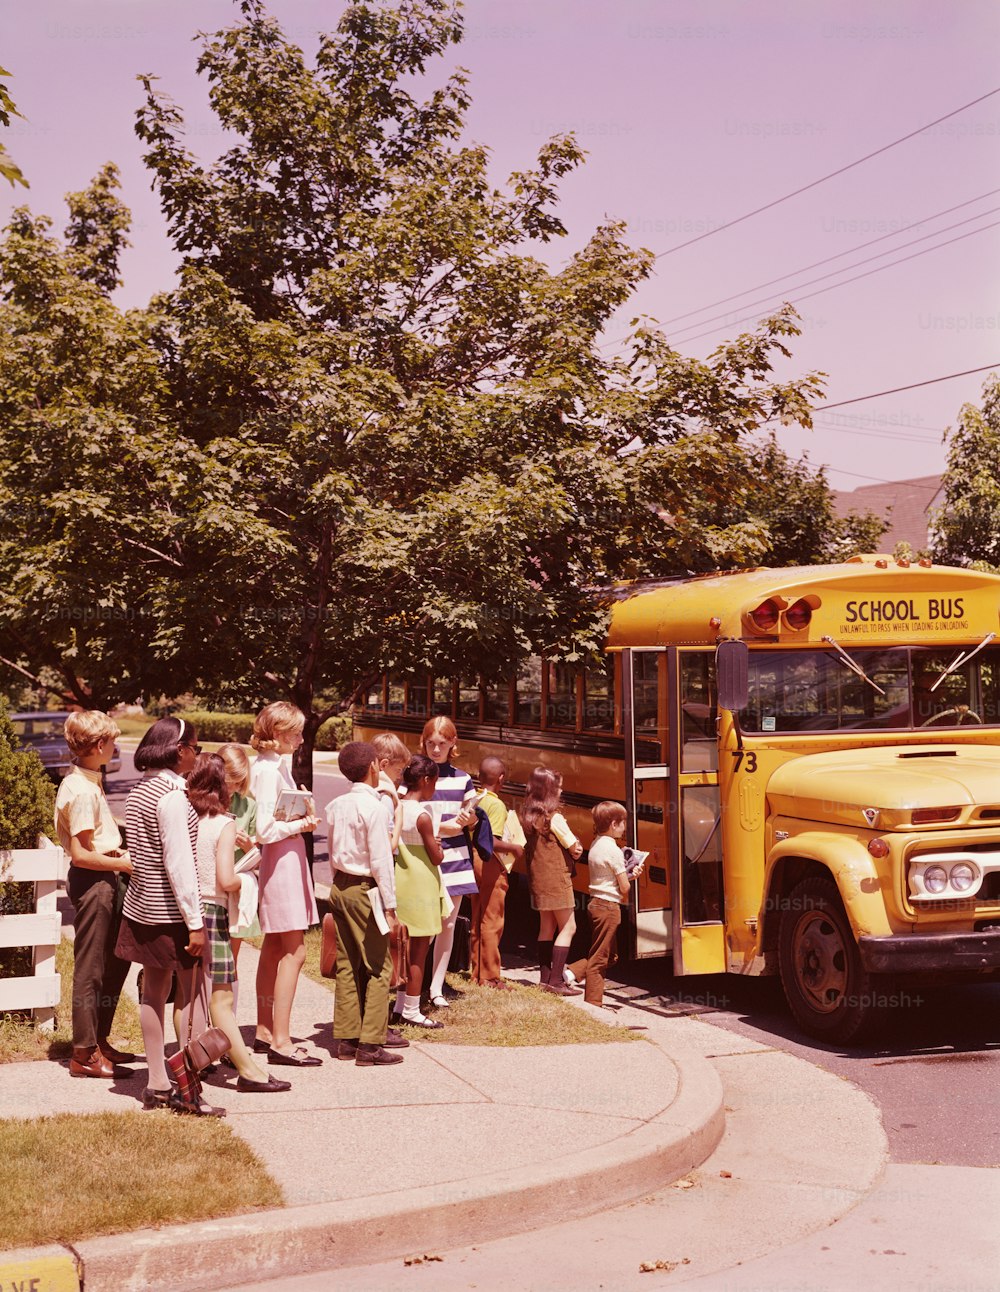 ÉTATS-UNIS - Vers les années 1970 : Des élèves font la queue, attendant de monter à bord d’un autobus scolaire.